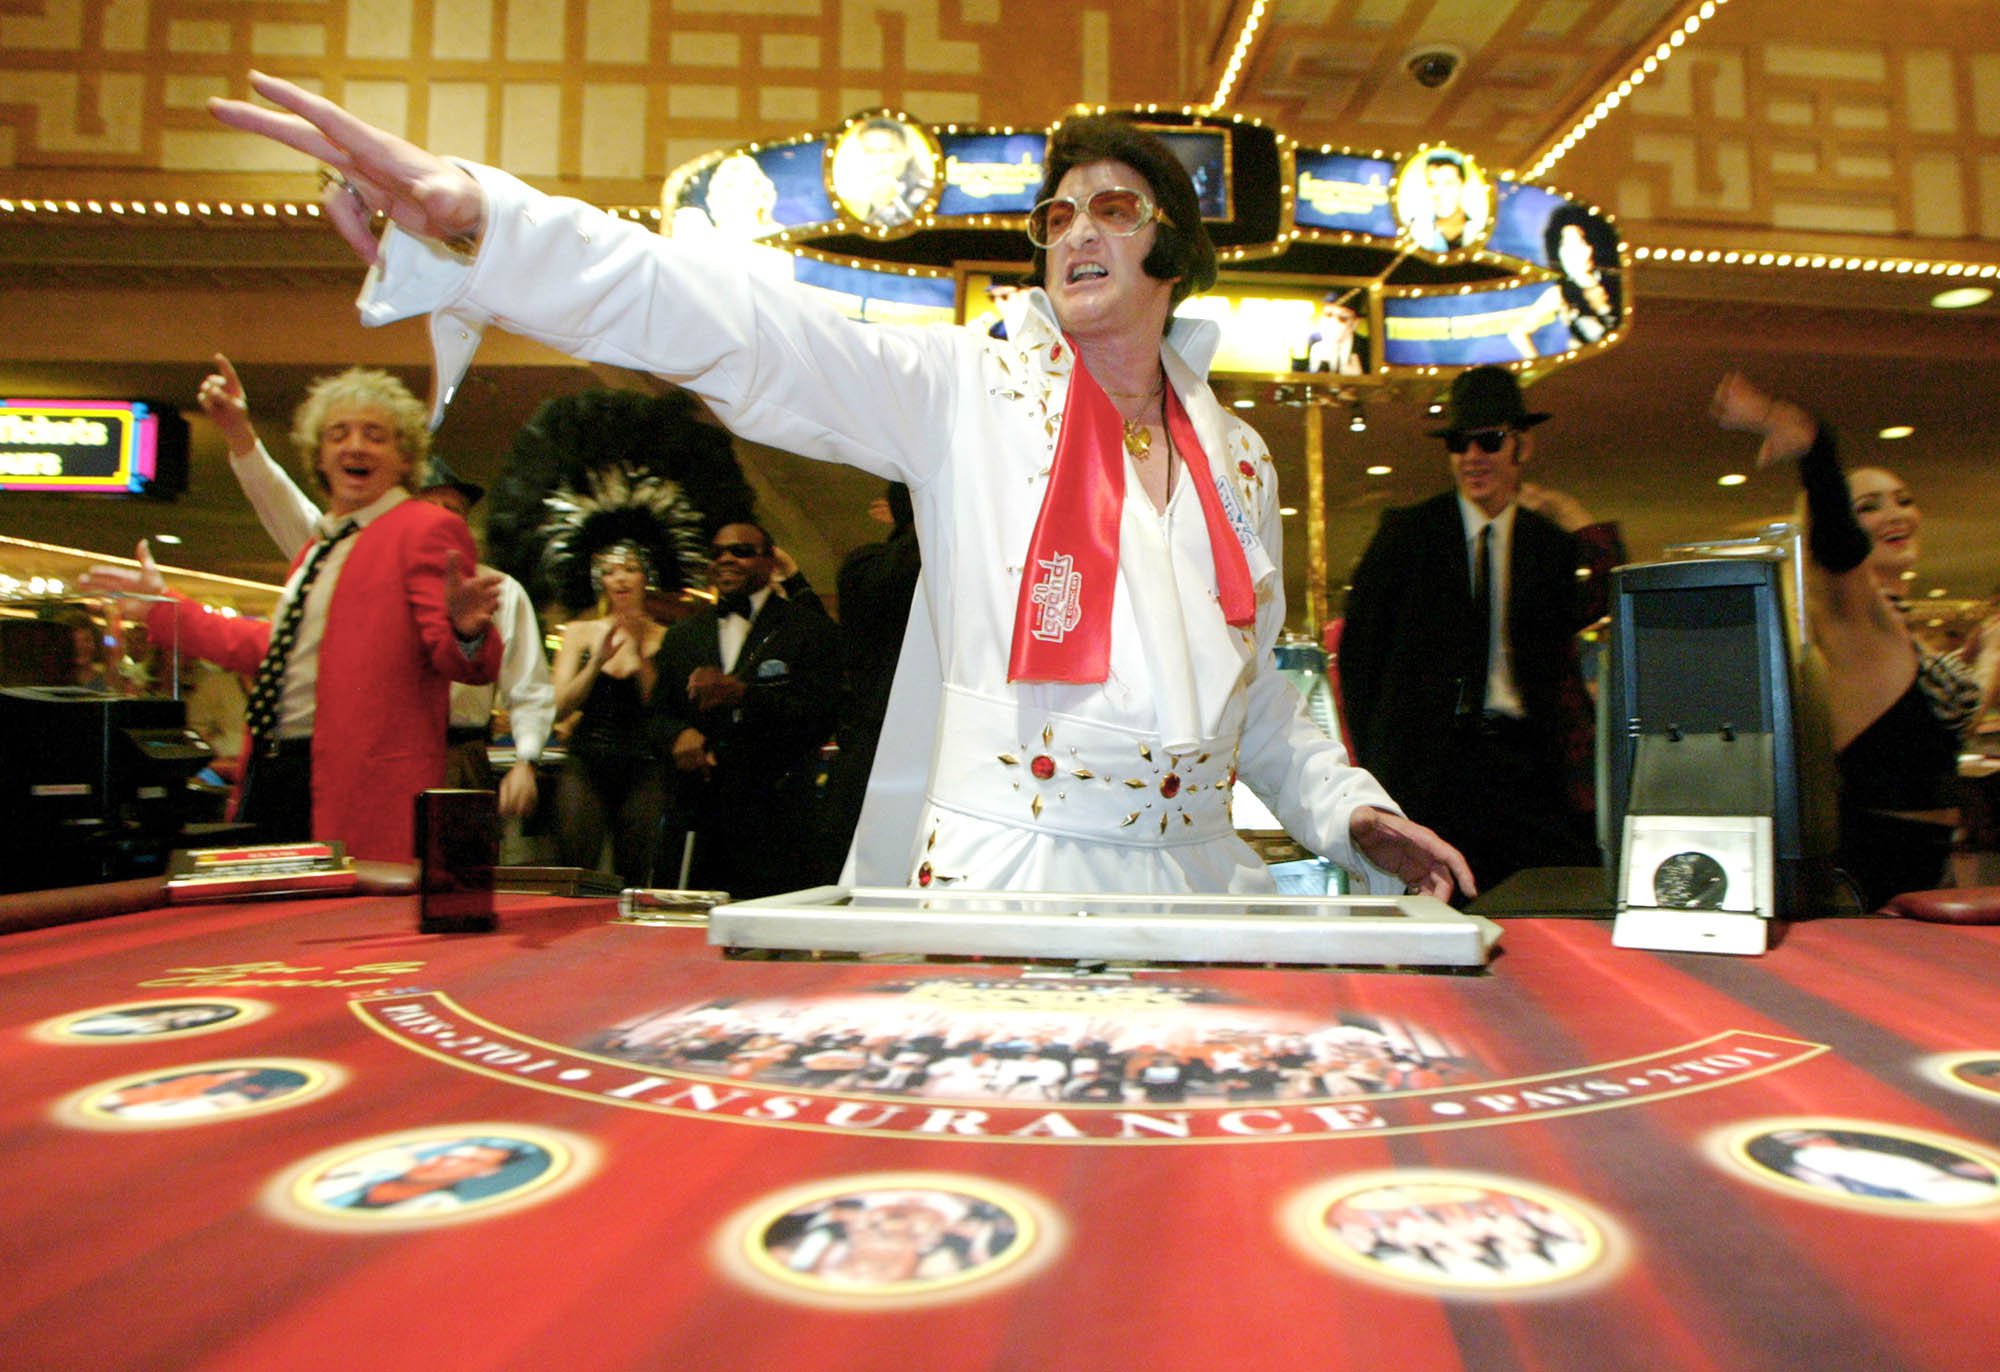 Las Vegas Gambling Stories